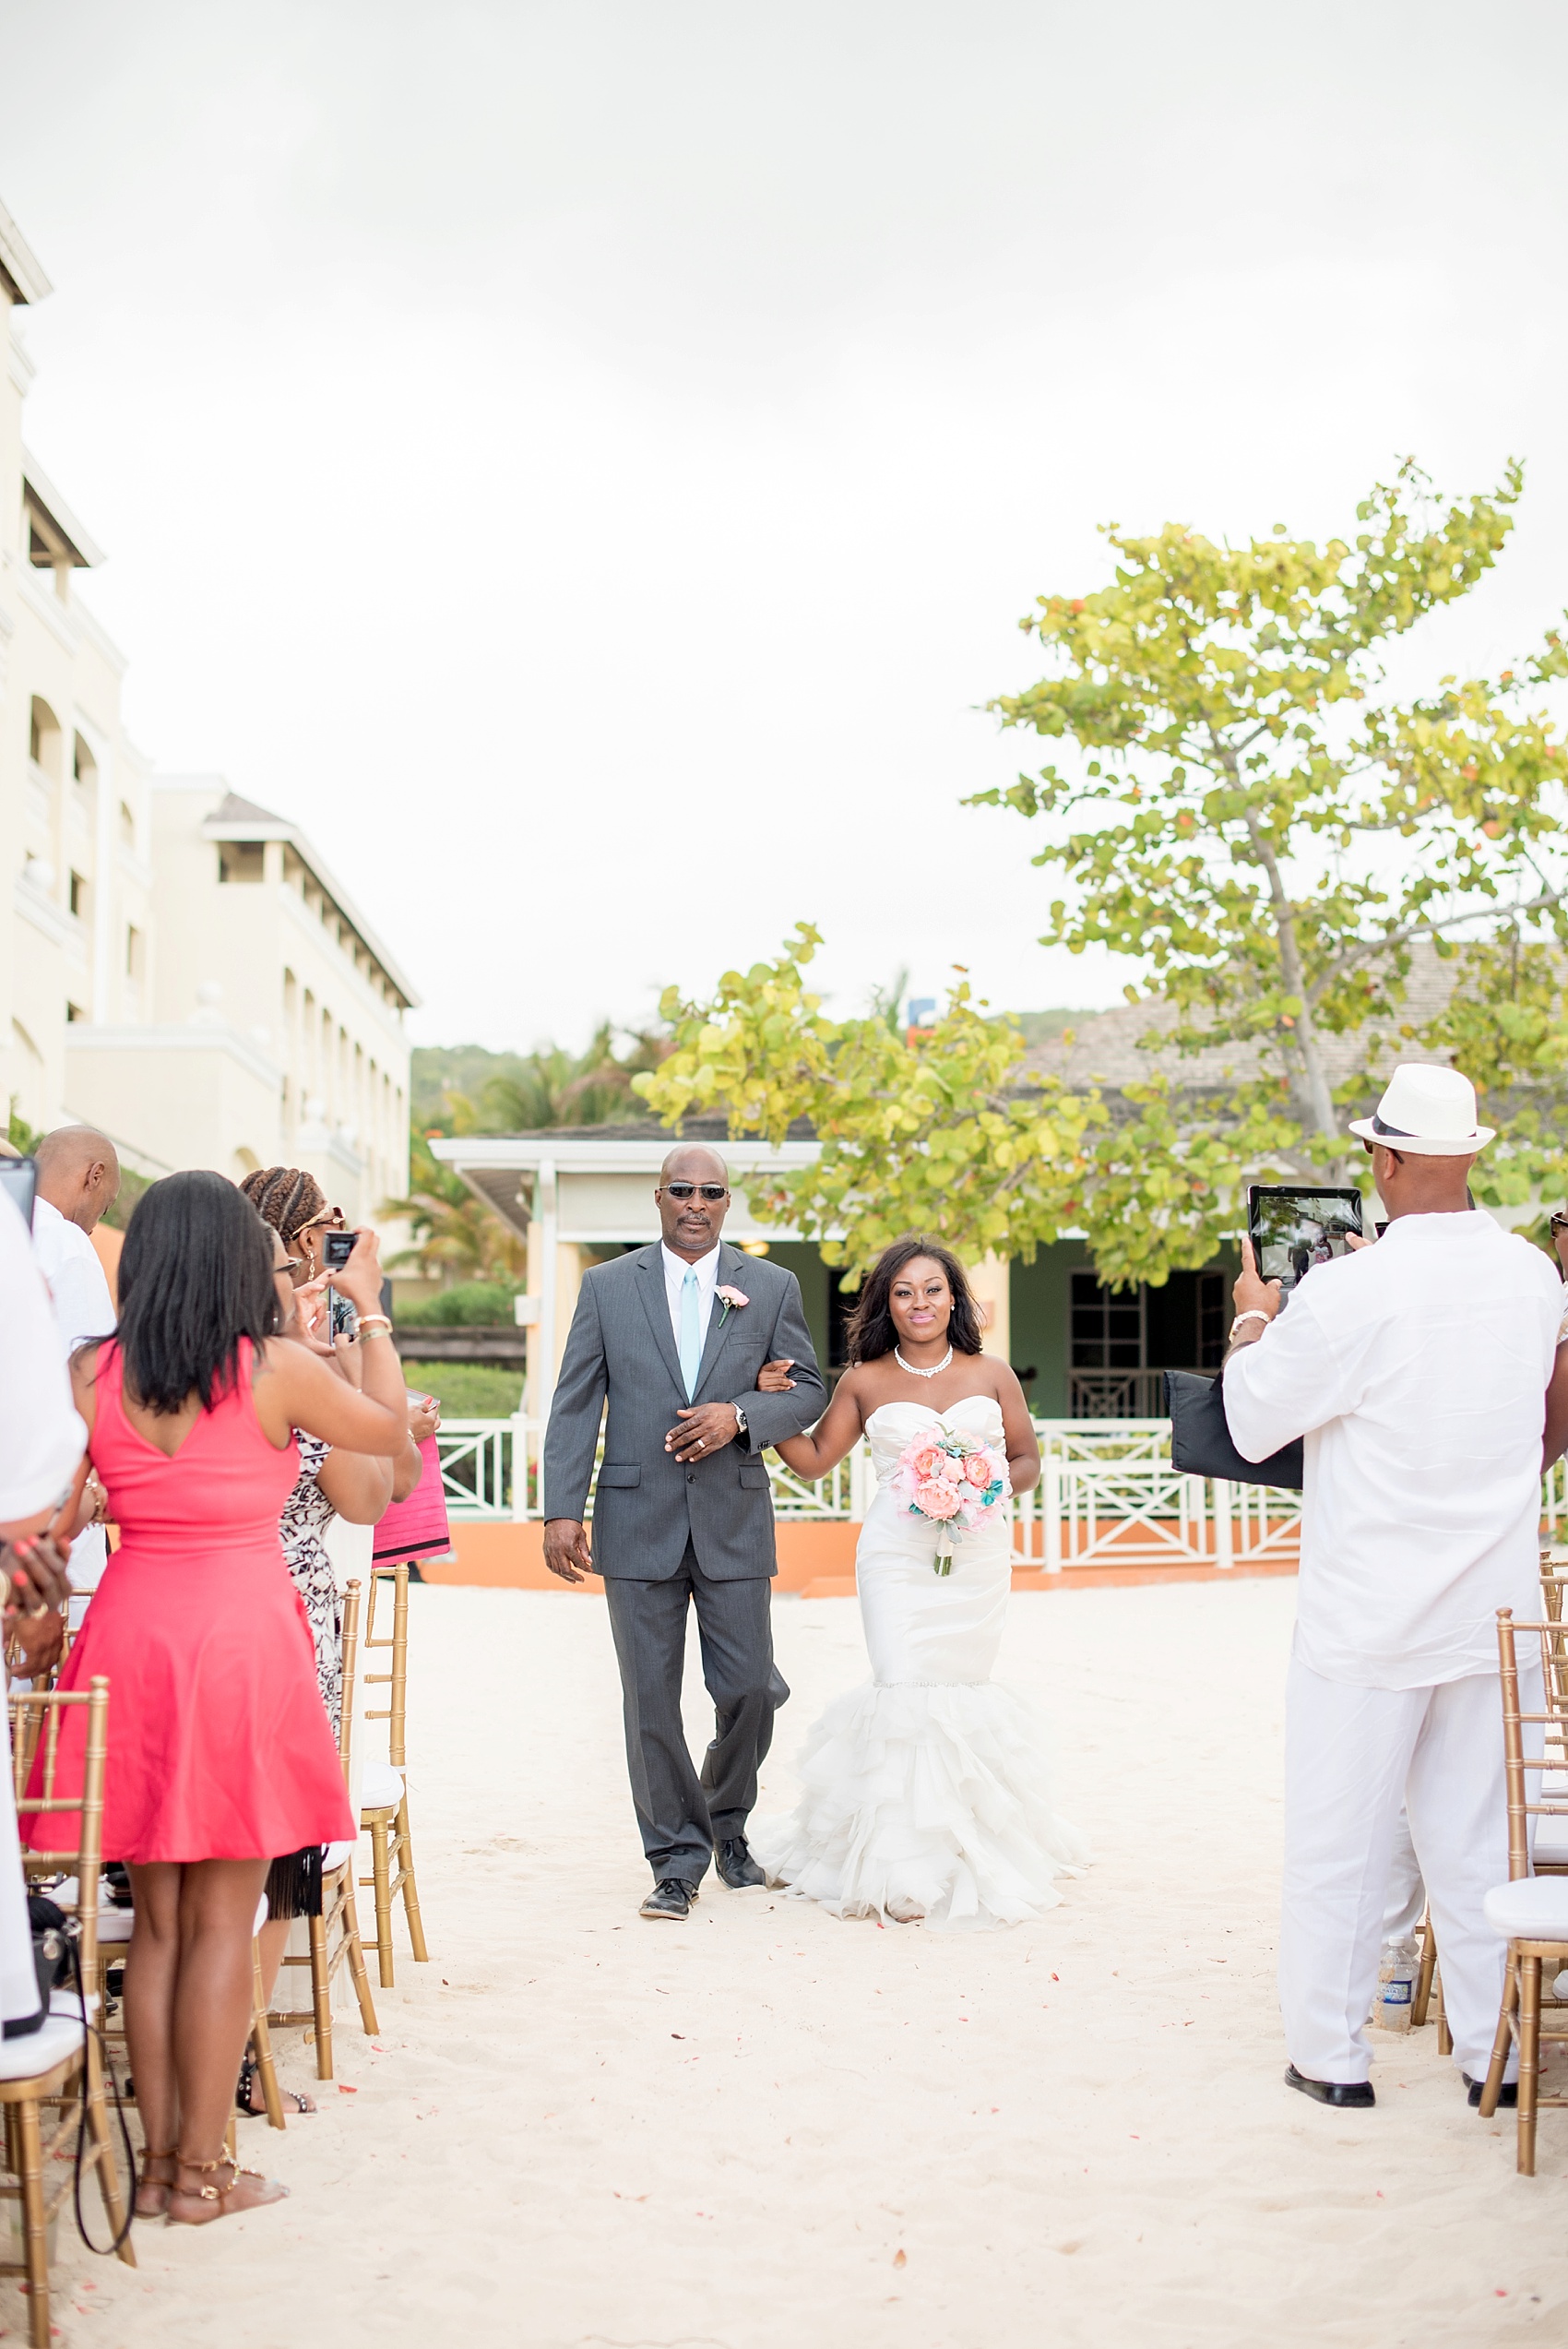 Iberostar Jamaica wedding ceremony photos. Images by Mikkel Paige Photography.